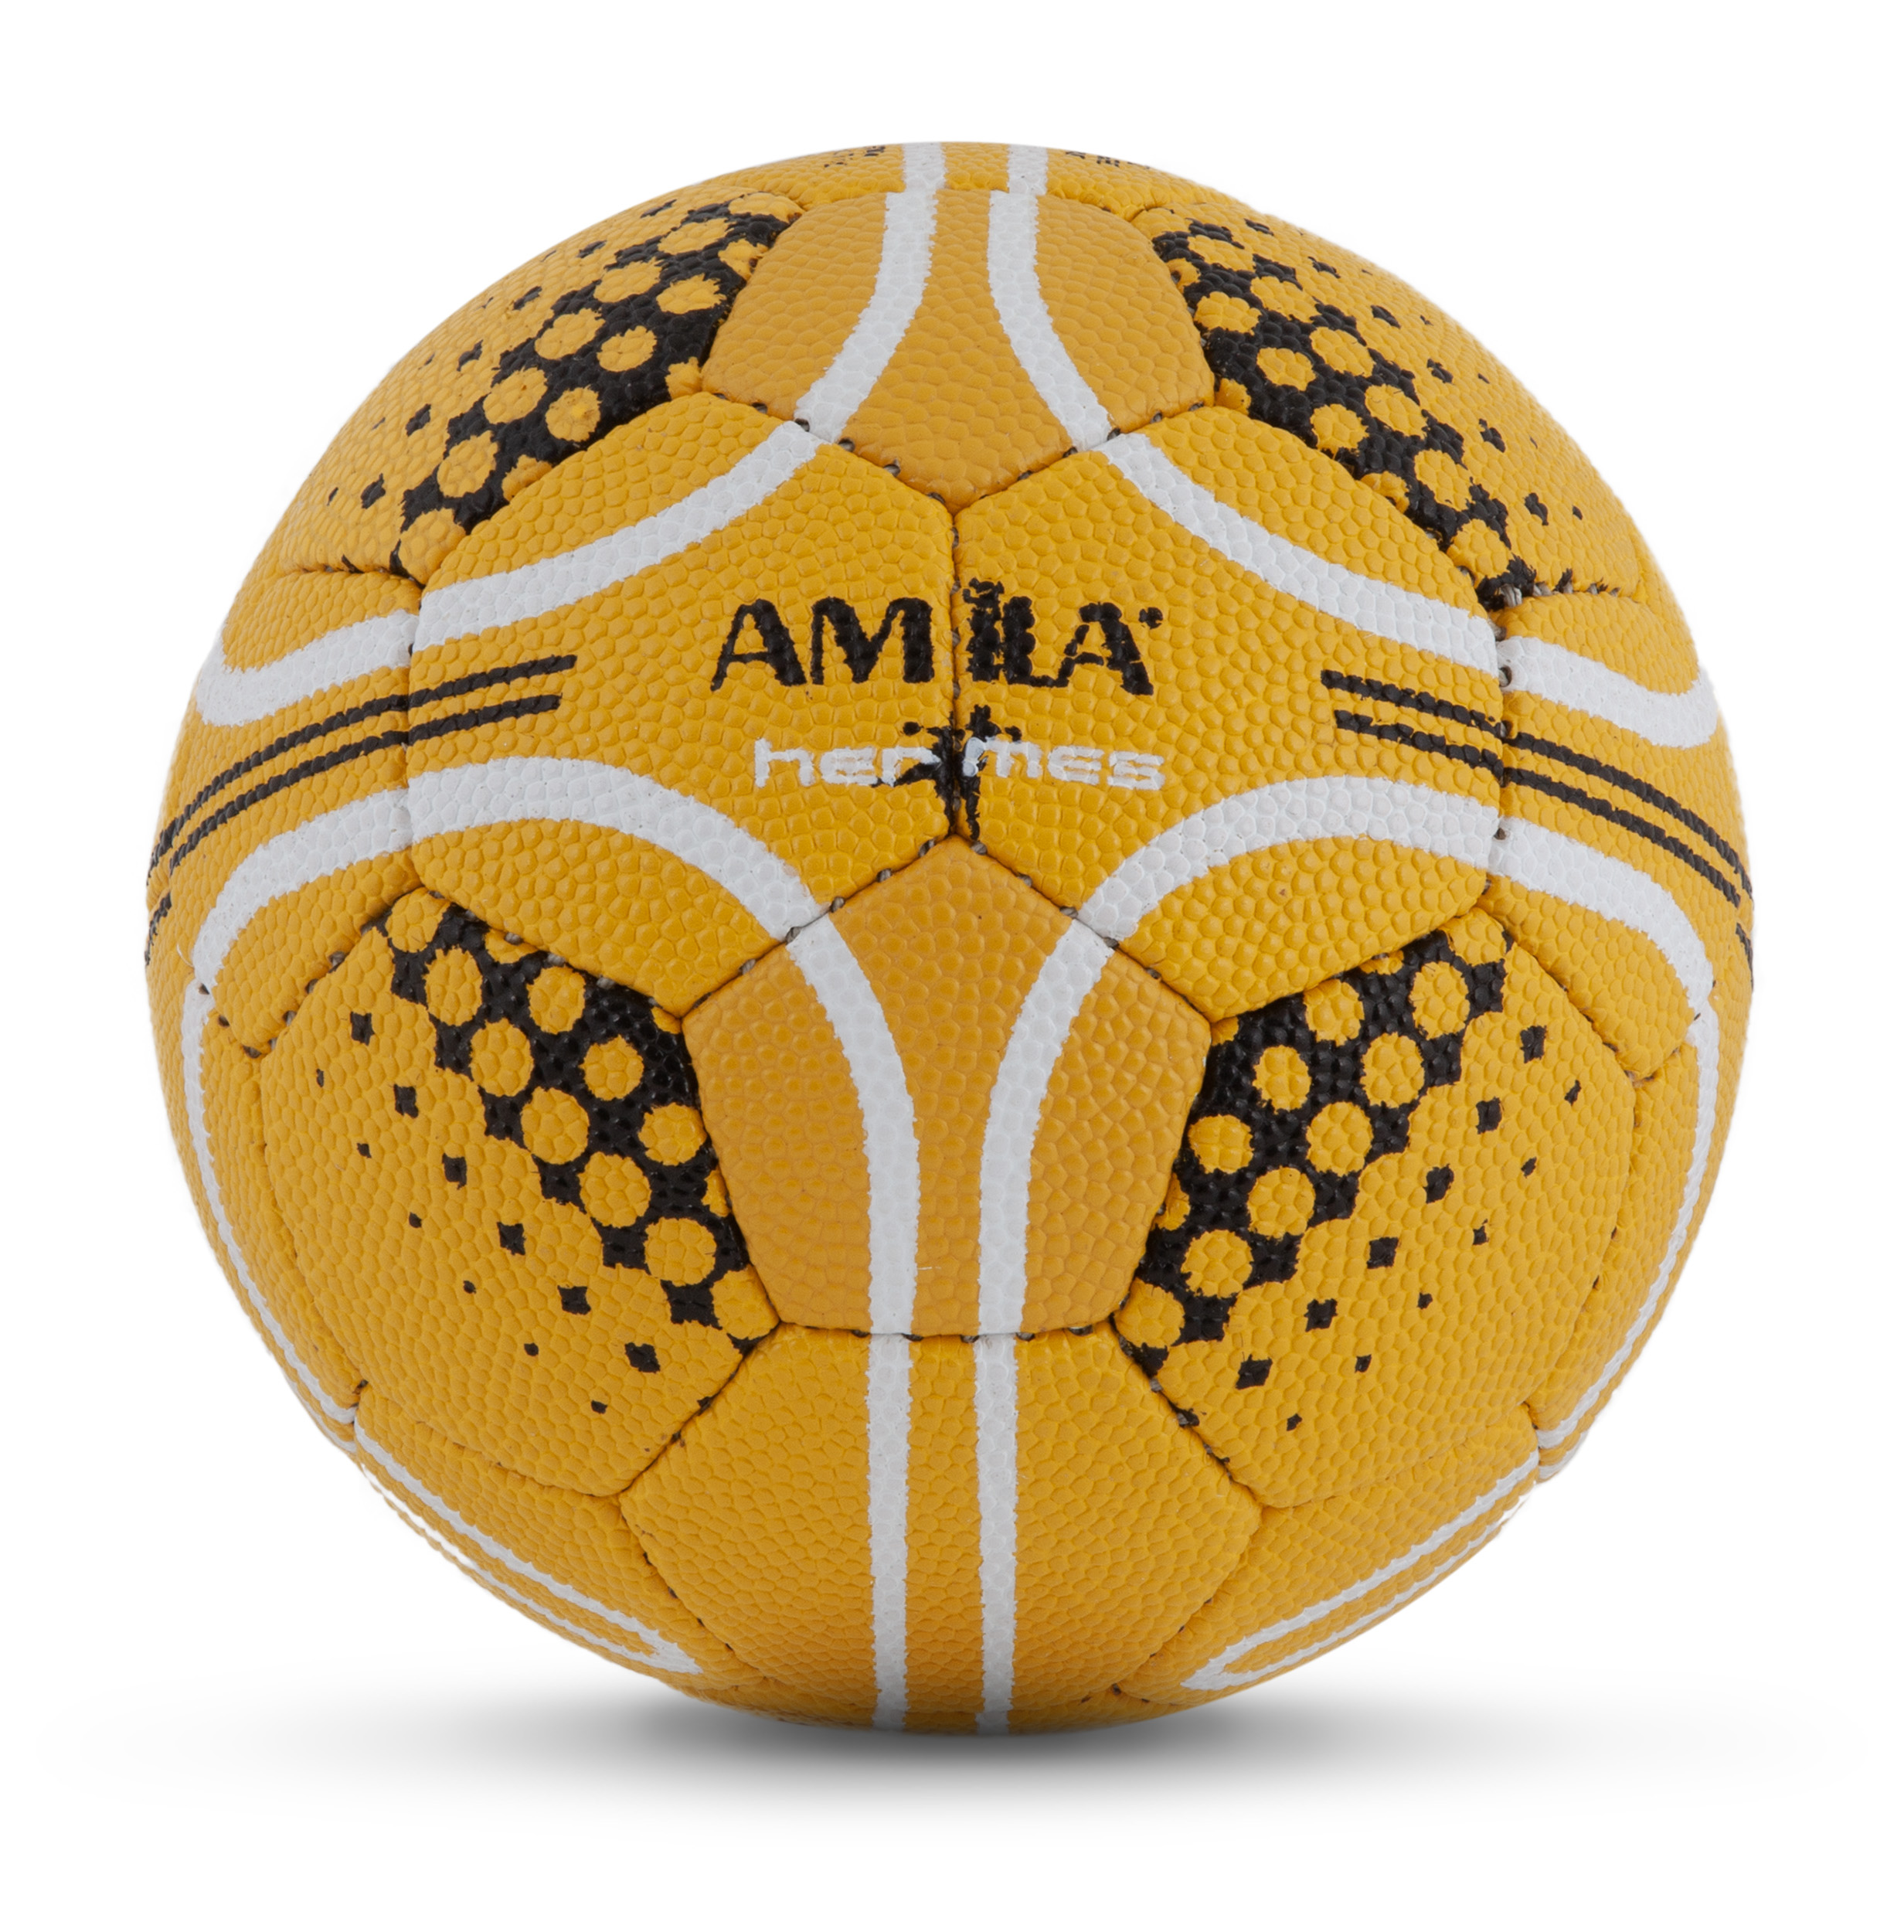 Amila Μπαλα Handball Amila Rubberized No1 (41326)